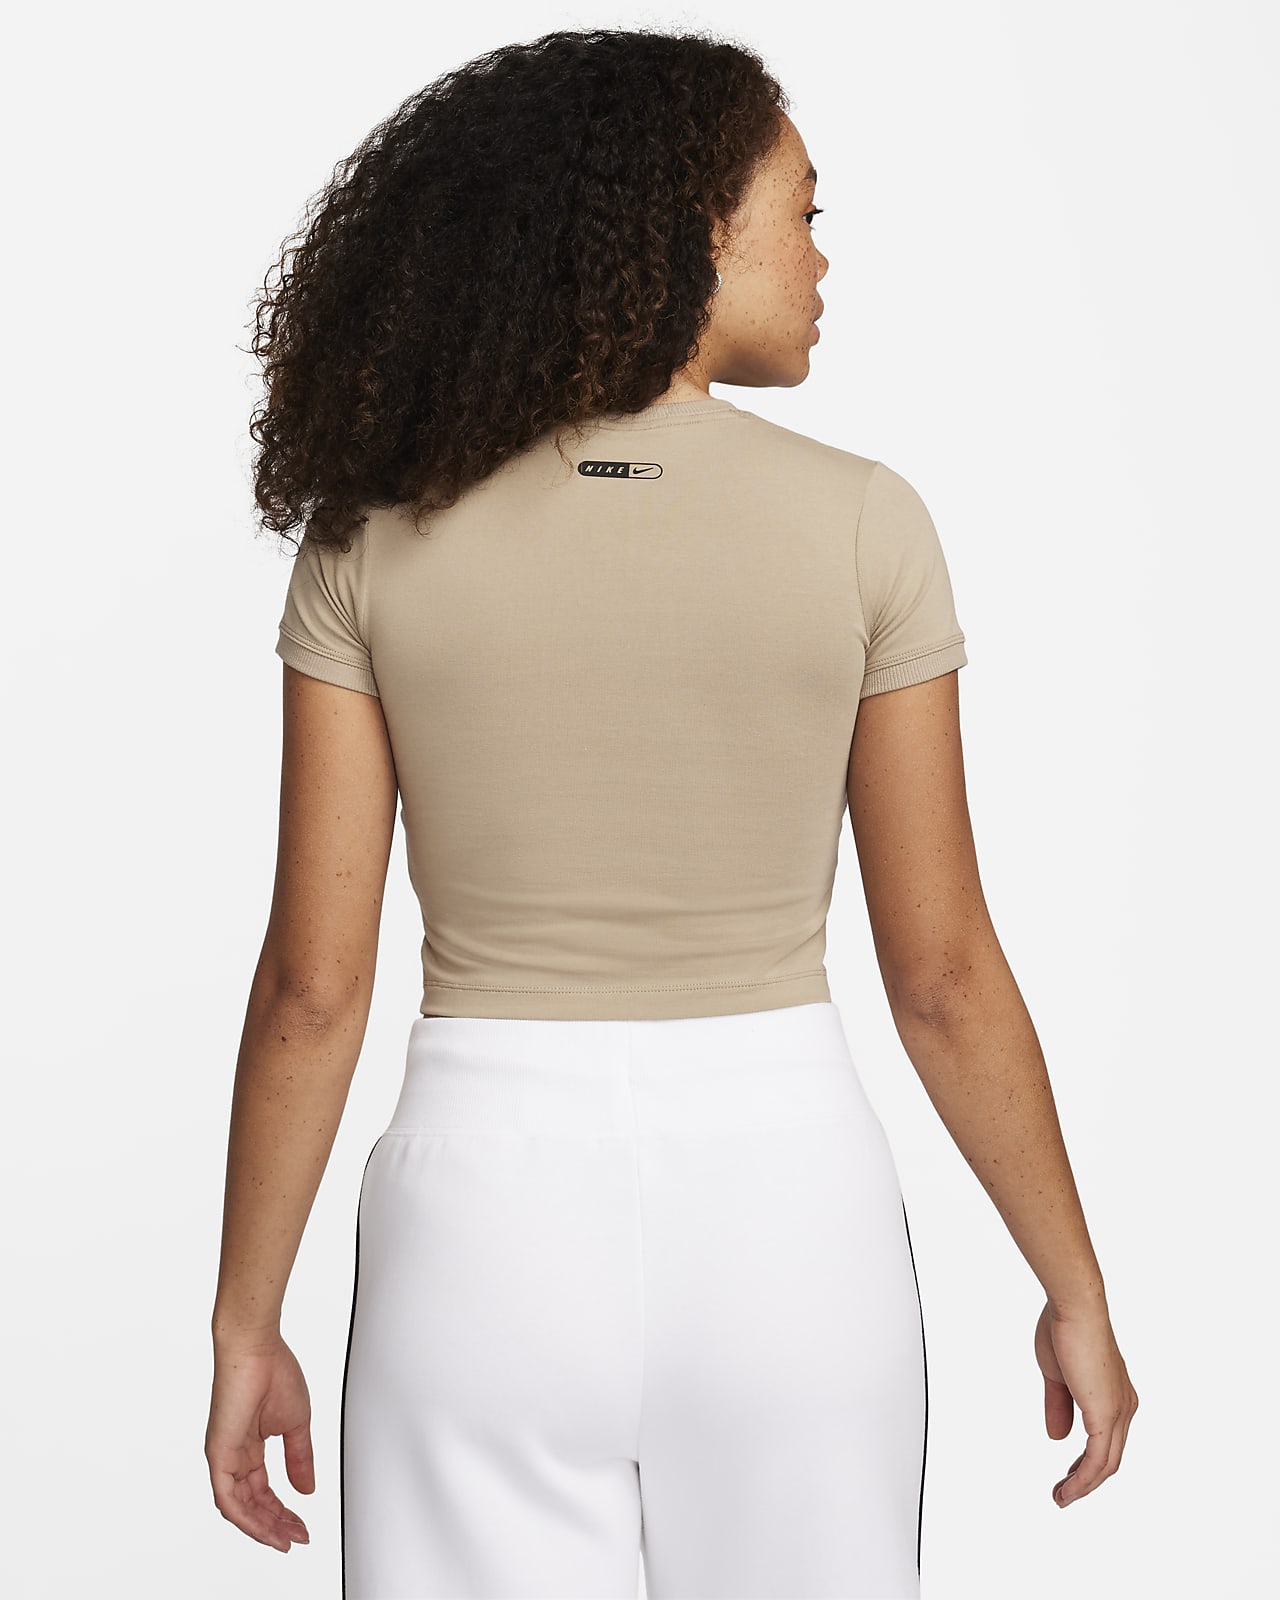 Nike Sportswear Women's Cropped T-Shirt. Nike LU